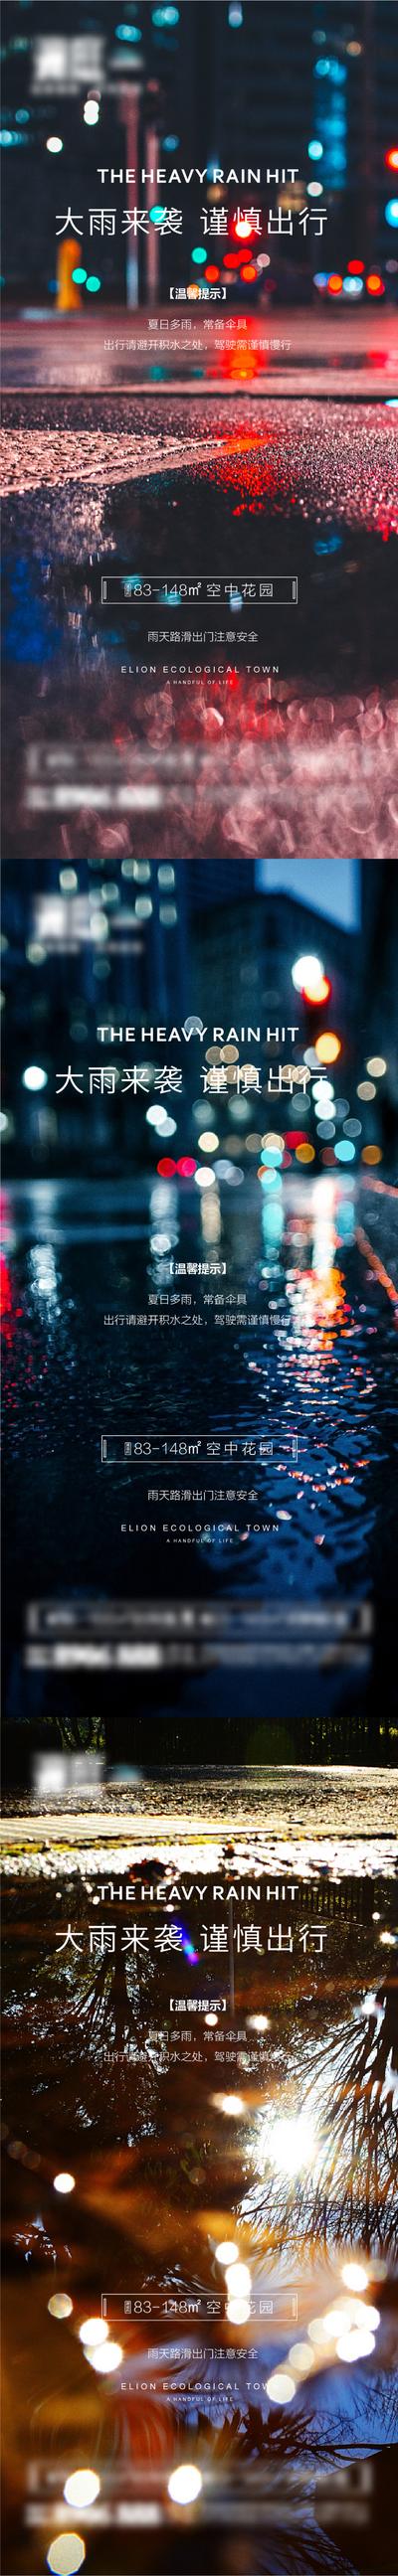 南门网 下暴雨预警提示海报